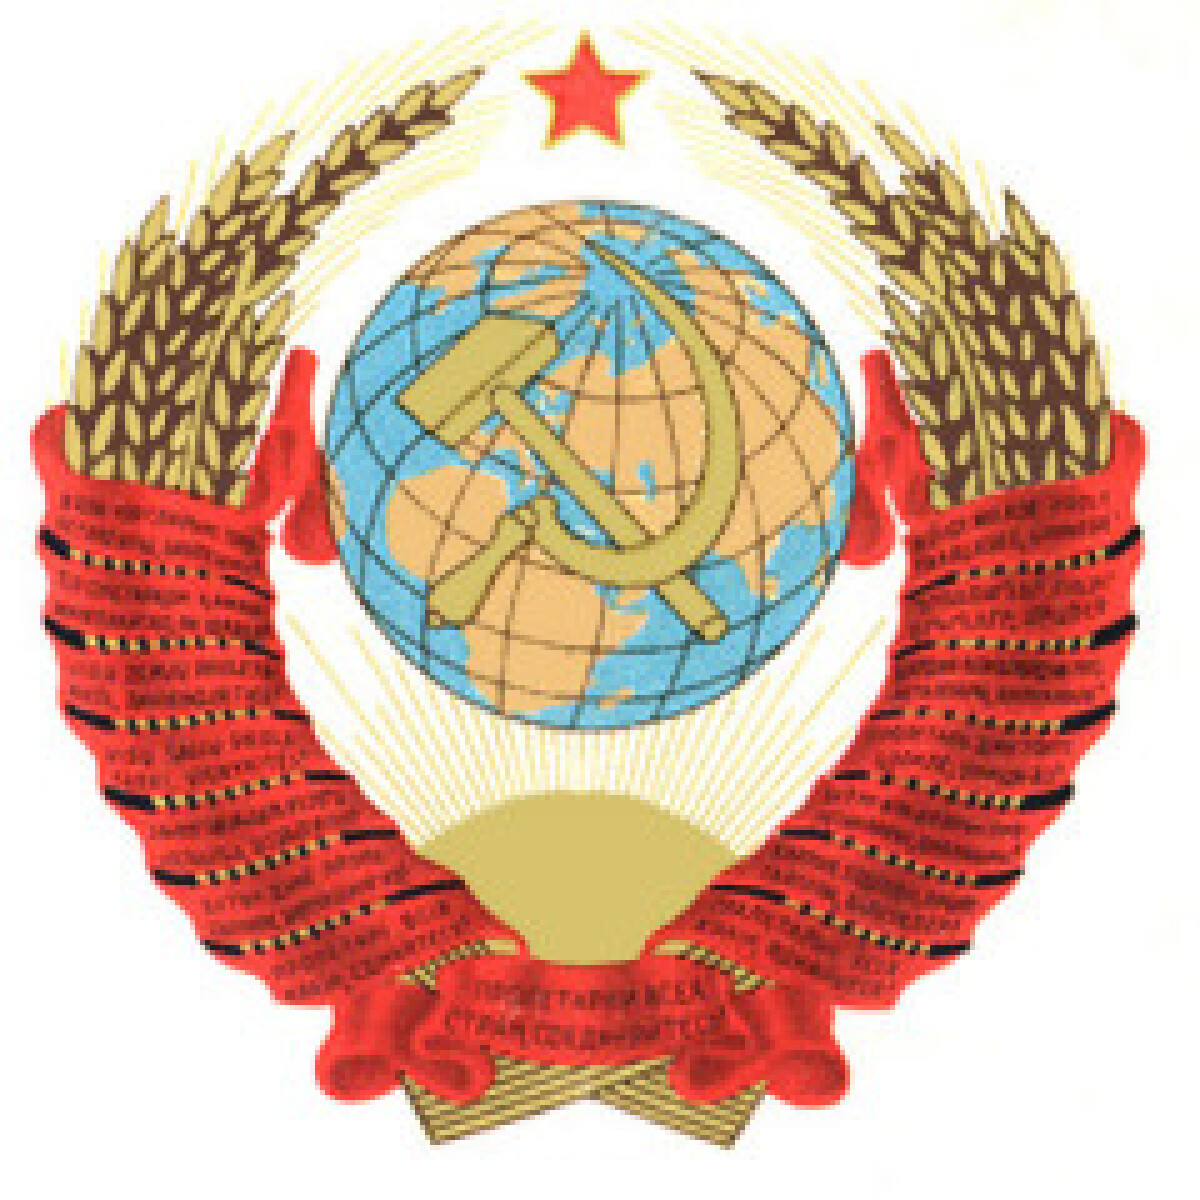 Кеңестік Социалистік Республикалар Одағы (КСРО) құрылды - e-history.kz